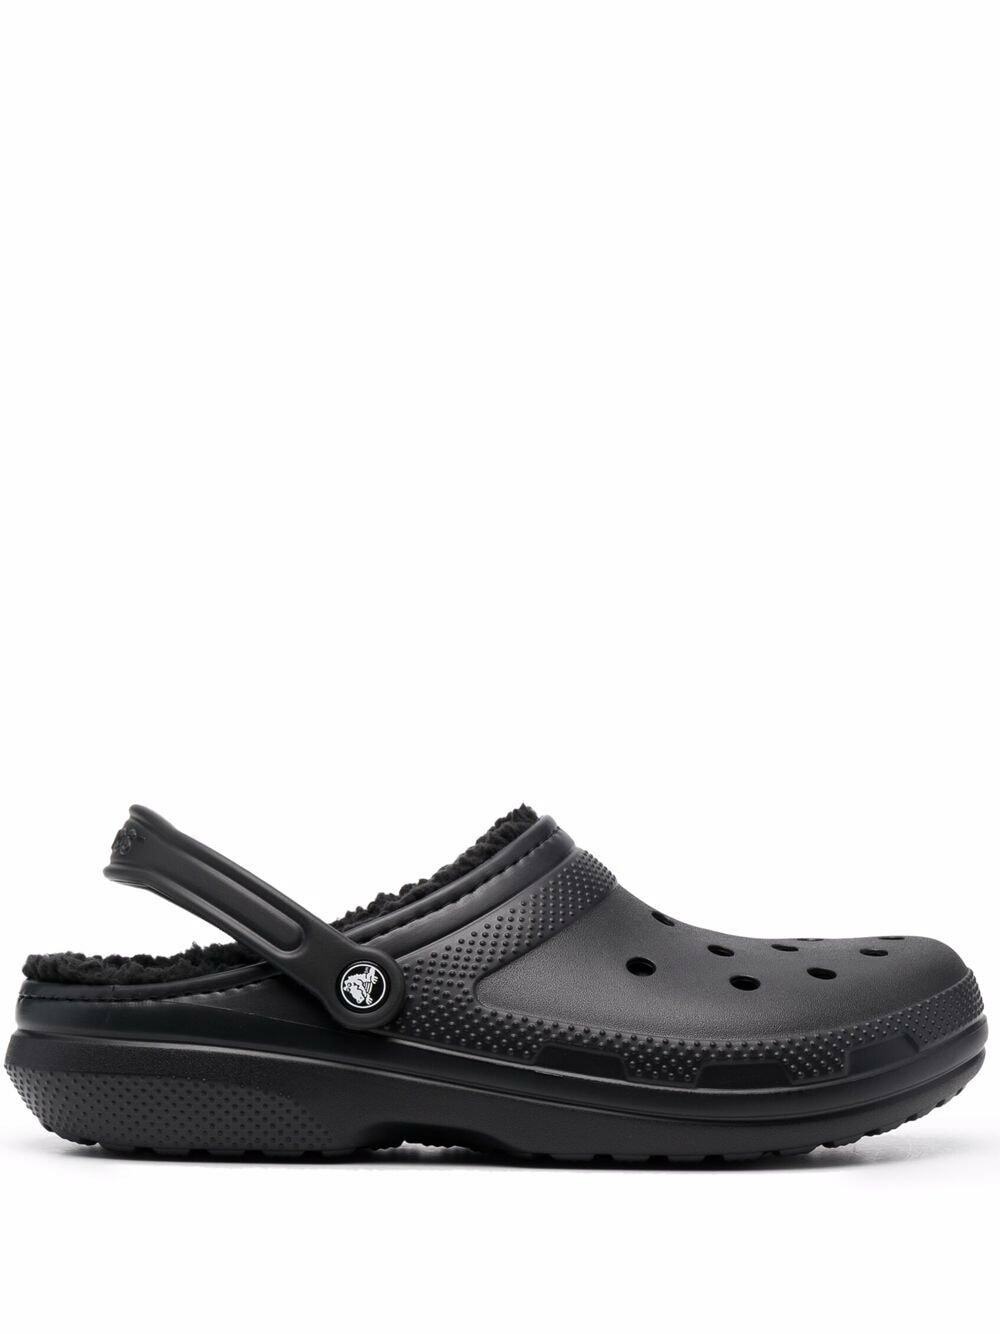 CROCS - Classic Lined Clog Sandals Crocs